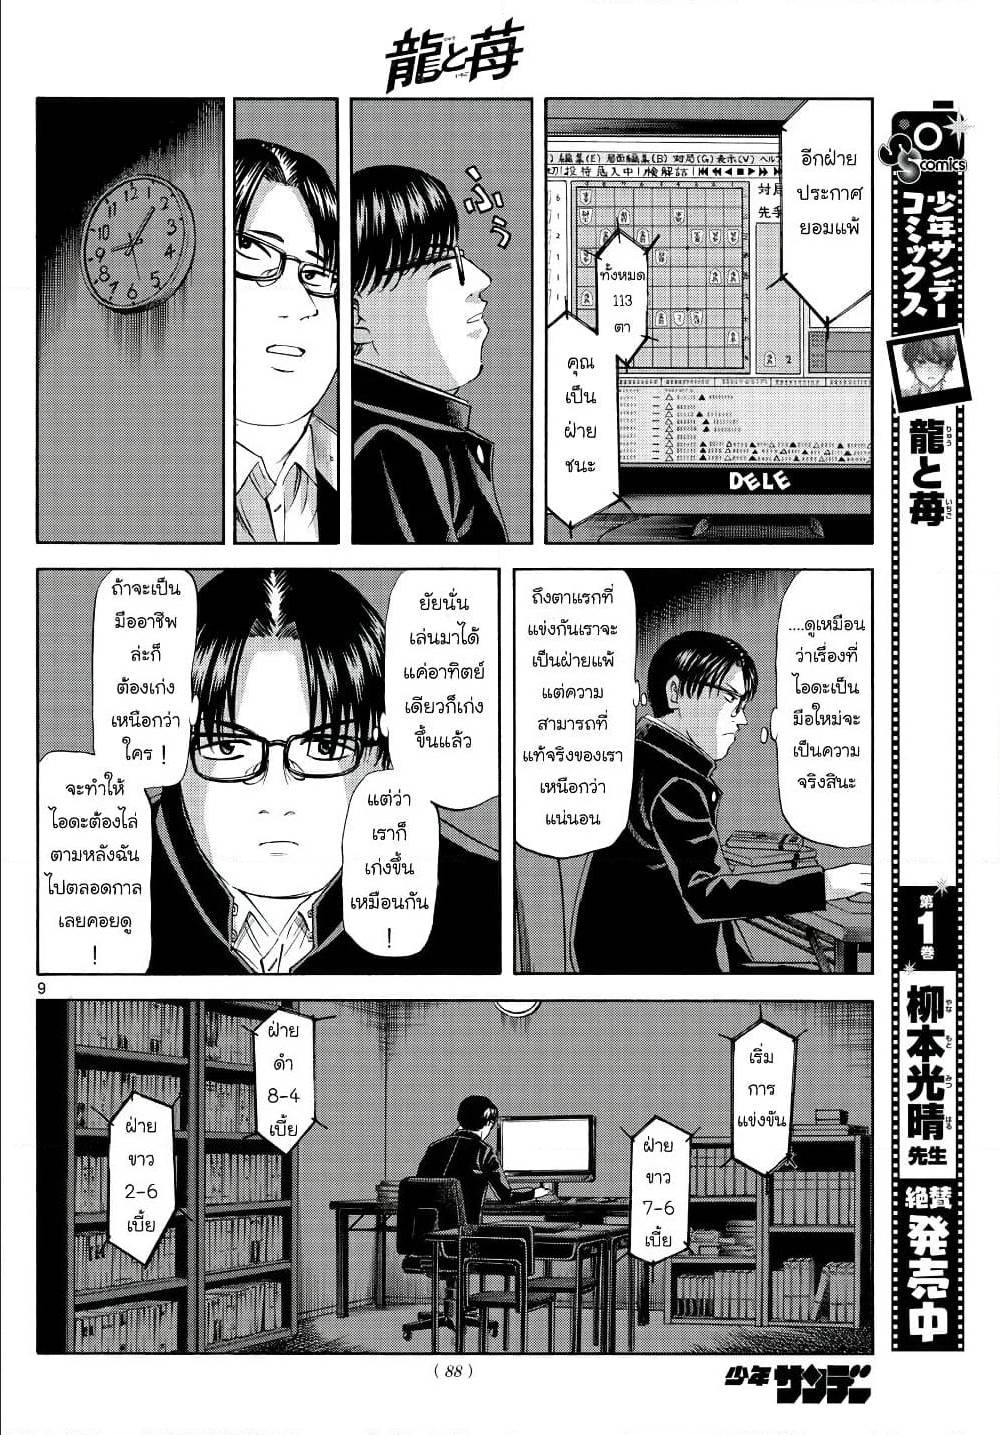 Ryuu to Ichigo 12 (9)